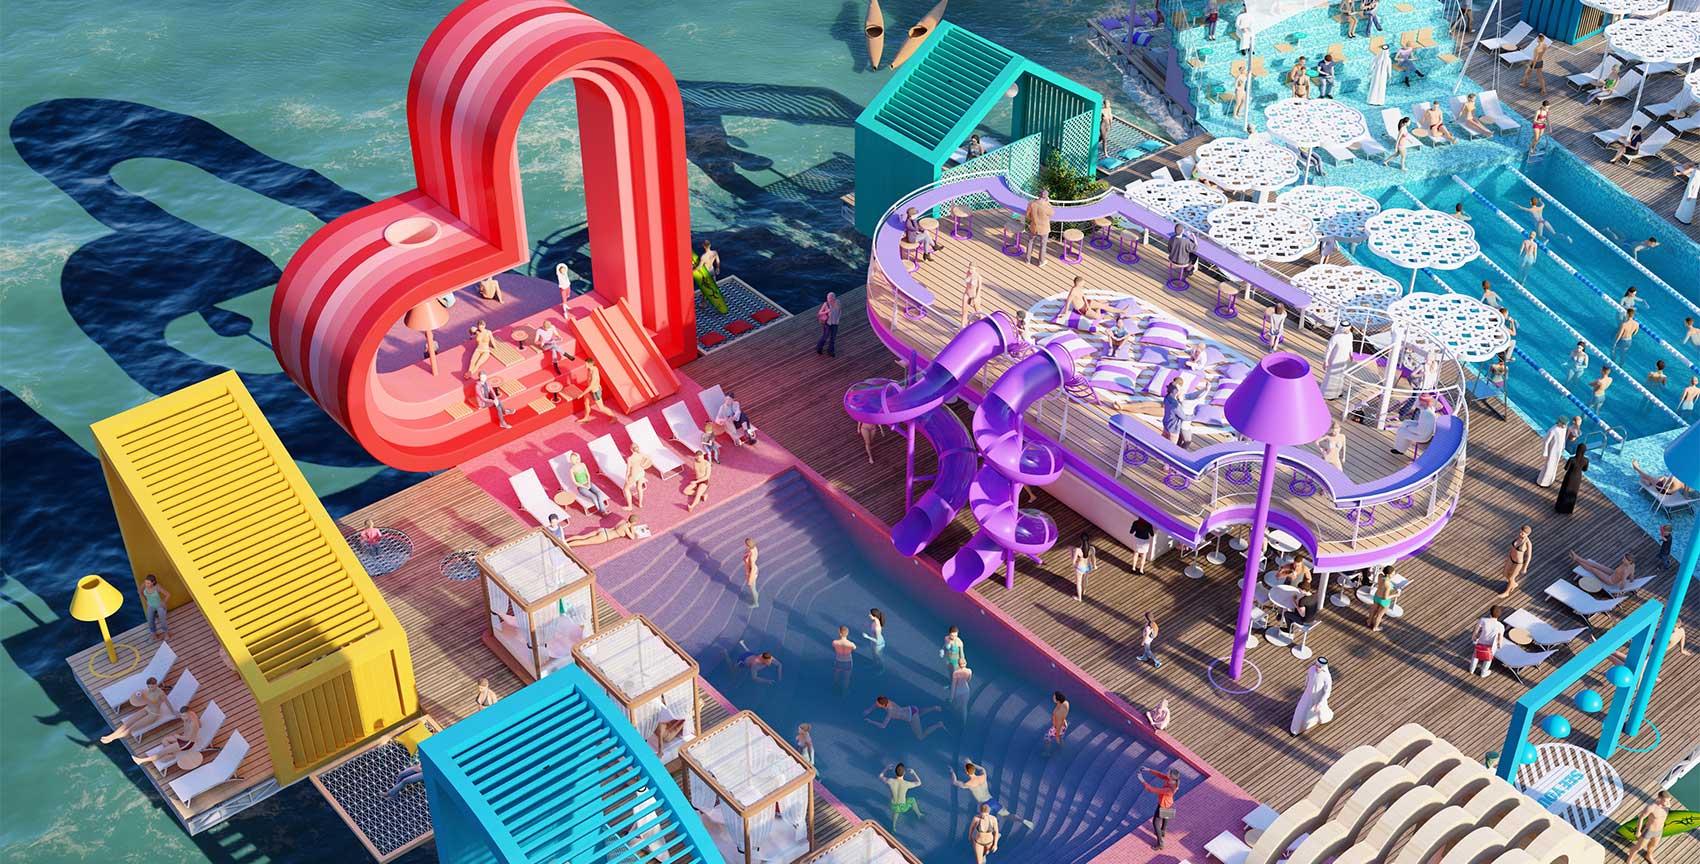 幻飘魔方泳池:漂浮的城市娱乐的颠覆性幻象